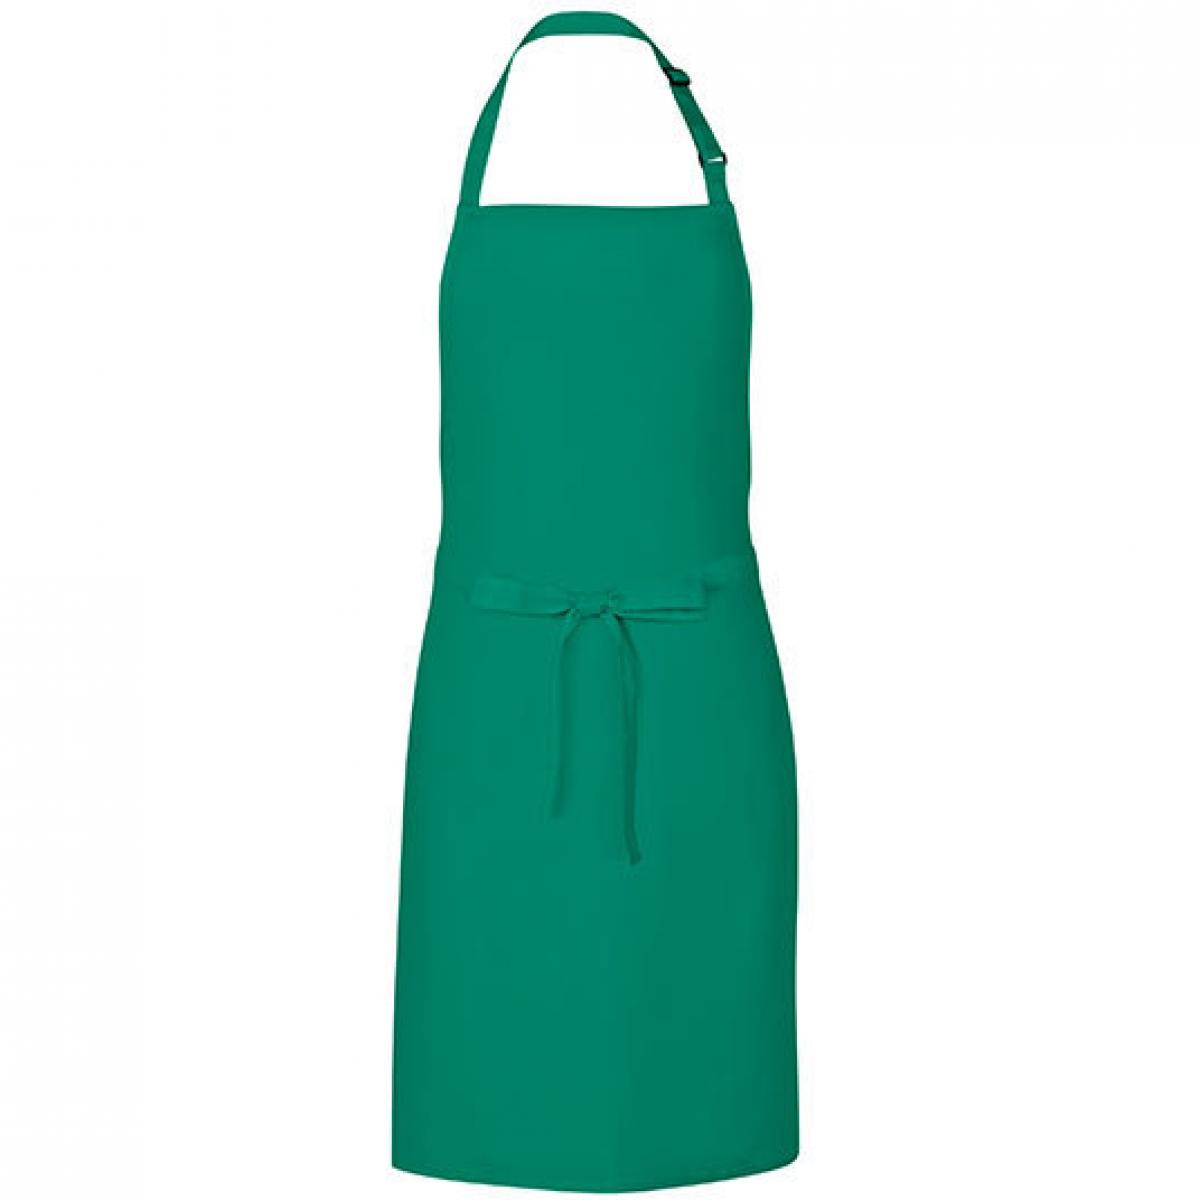 Hersteller: Link Kitchen Wear Herstellernummer: MS8572 Artikelbezeichnung: Multi Apron - 72 x 85 cm - Waschbar bis 60 °C Farbe: Emerald (ca. Pantone 341)